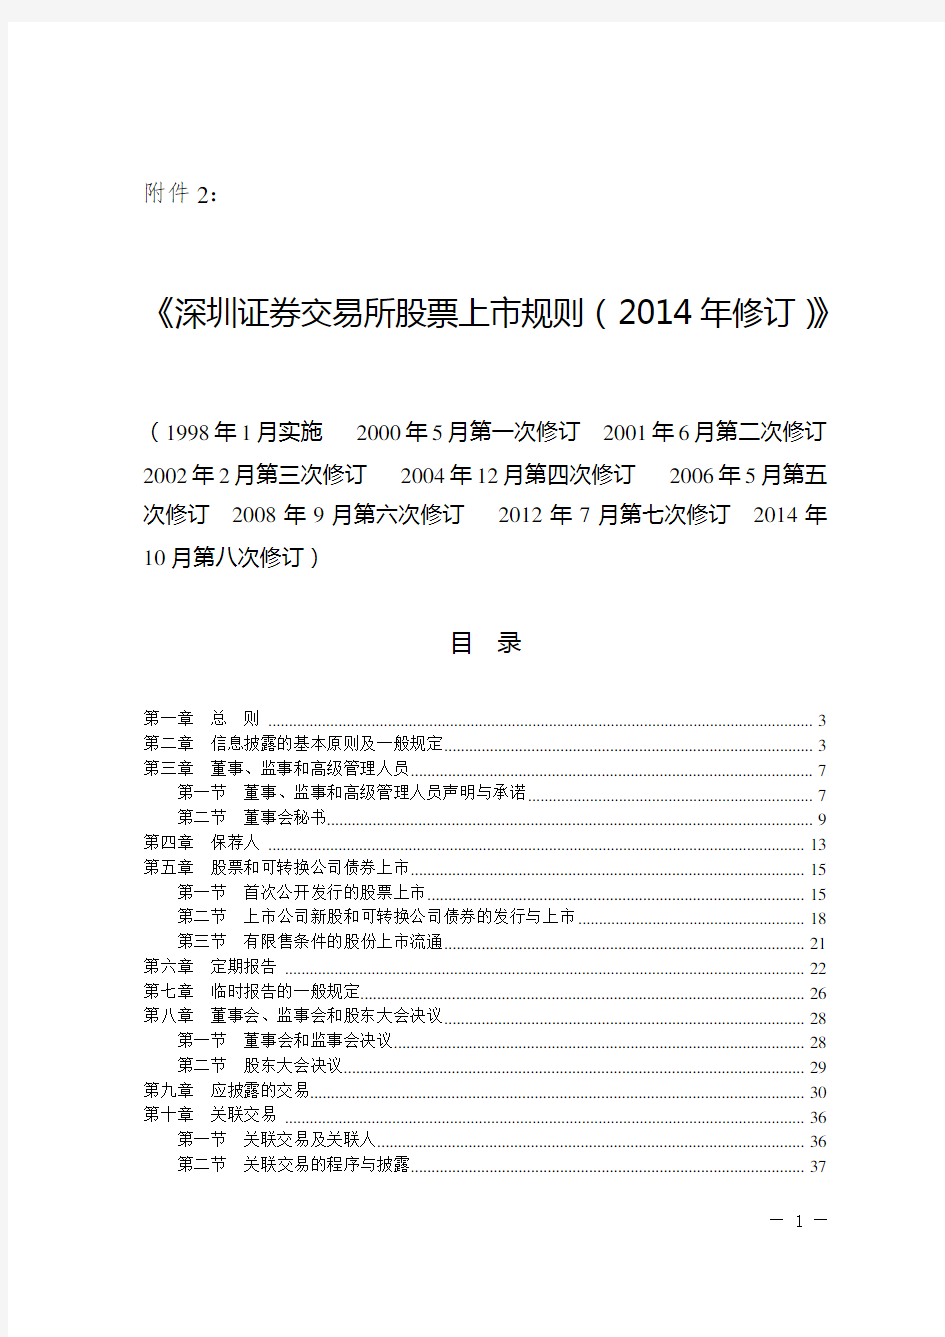 深圳证券交易所股票上市规则(2014年修订)